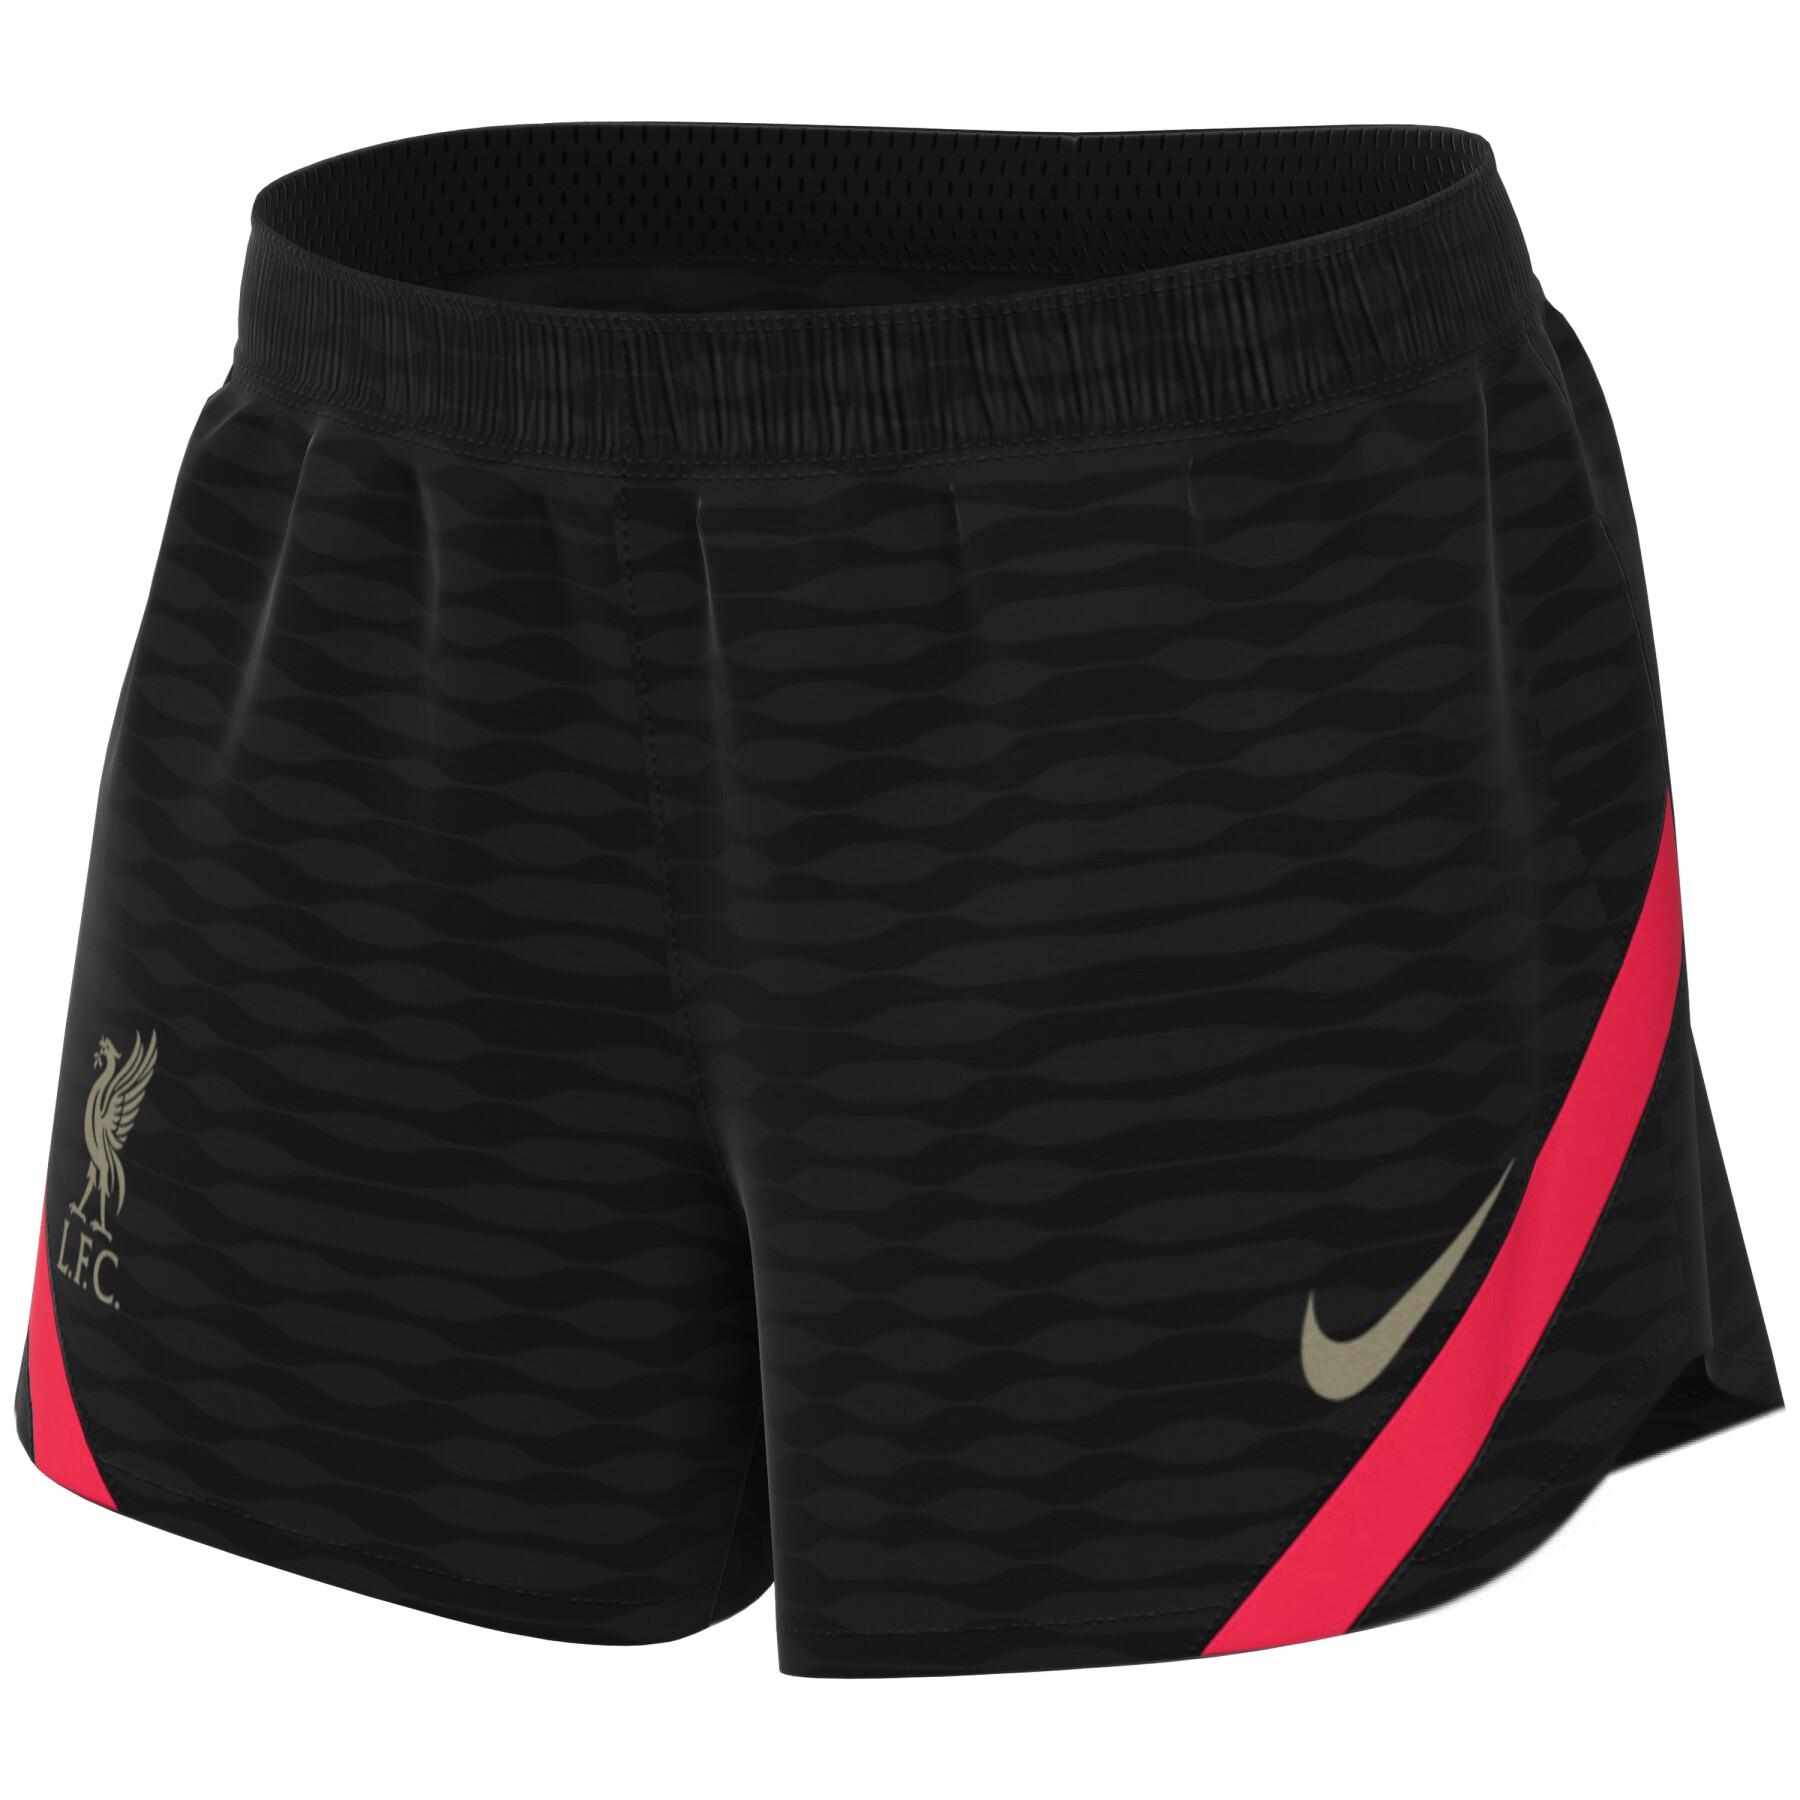 Women's shorts Liverpool FC 2021/22 FC Dri-FIT Strike